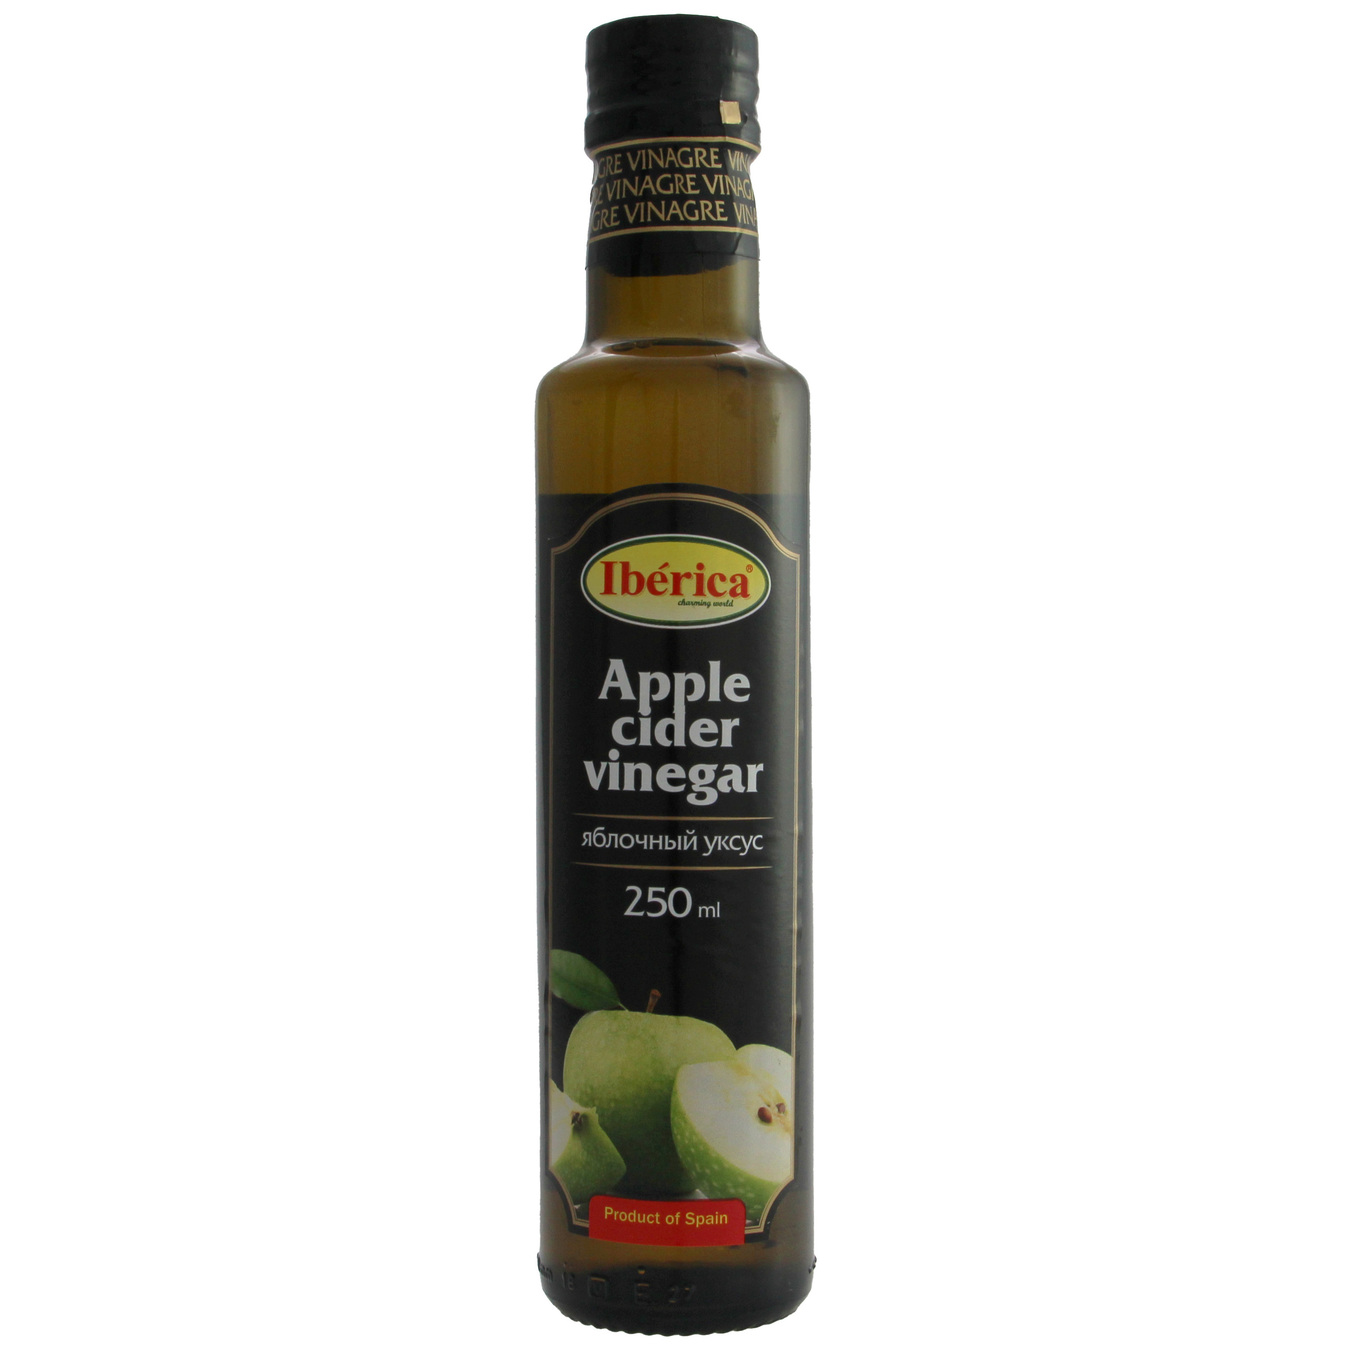 Iberica apple Vinegar 250ml